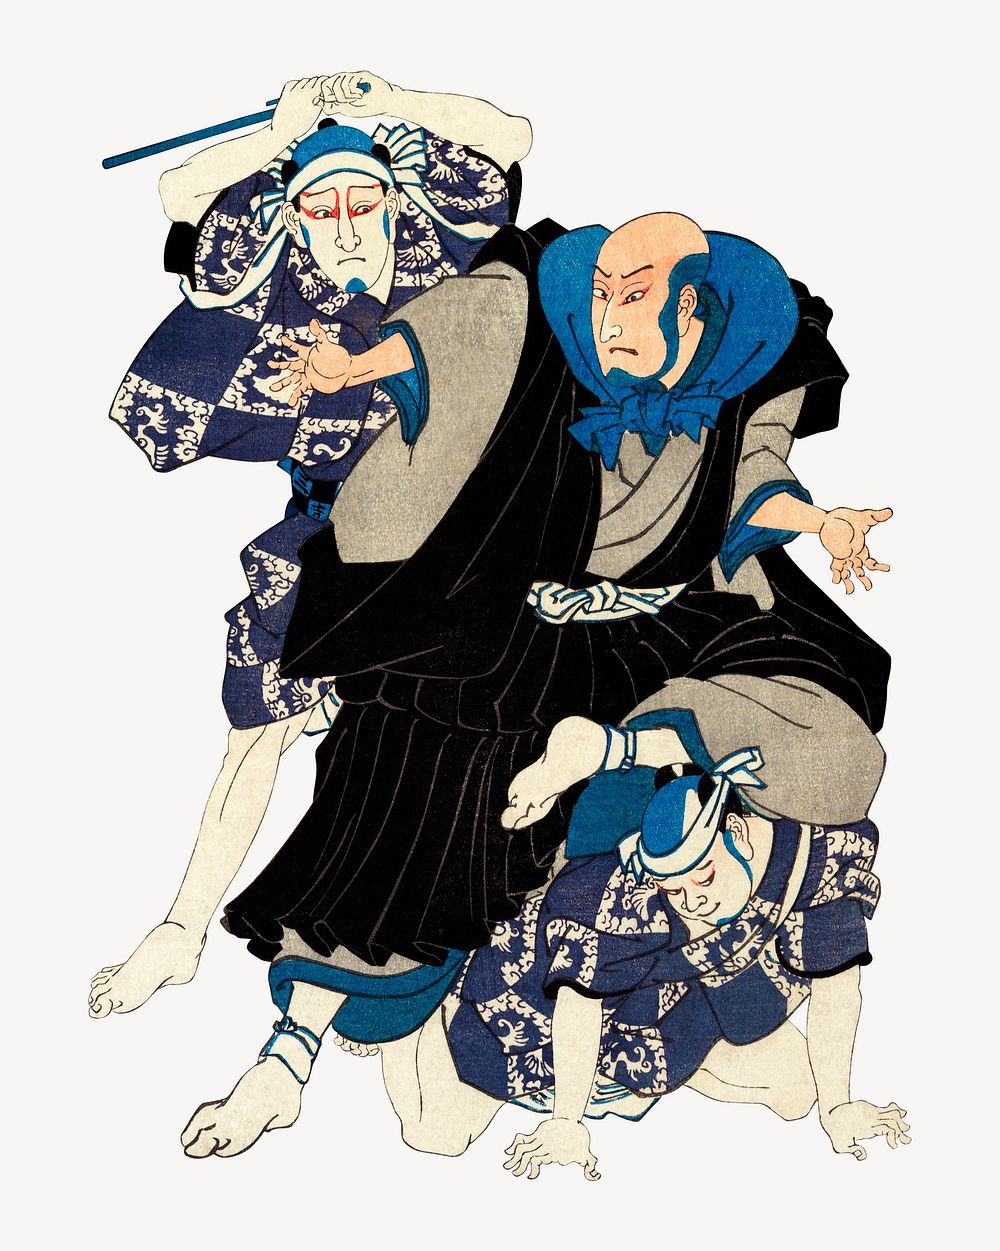 Sato Norikiyo Nyudo Saigo Yoshinaka, Japanese ukiyo-e woodblock print by Utagawa Kuniyoshi. Remixed by rawpixel.